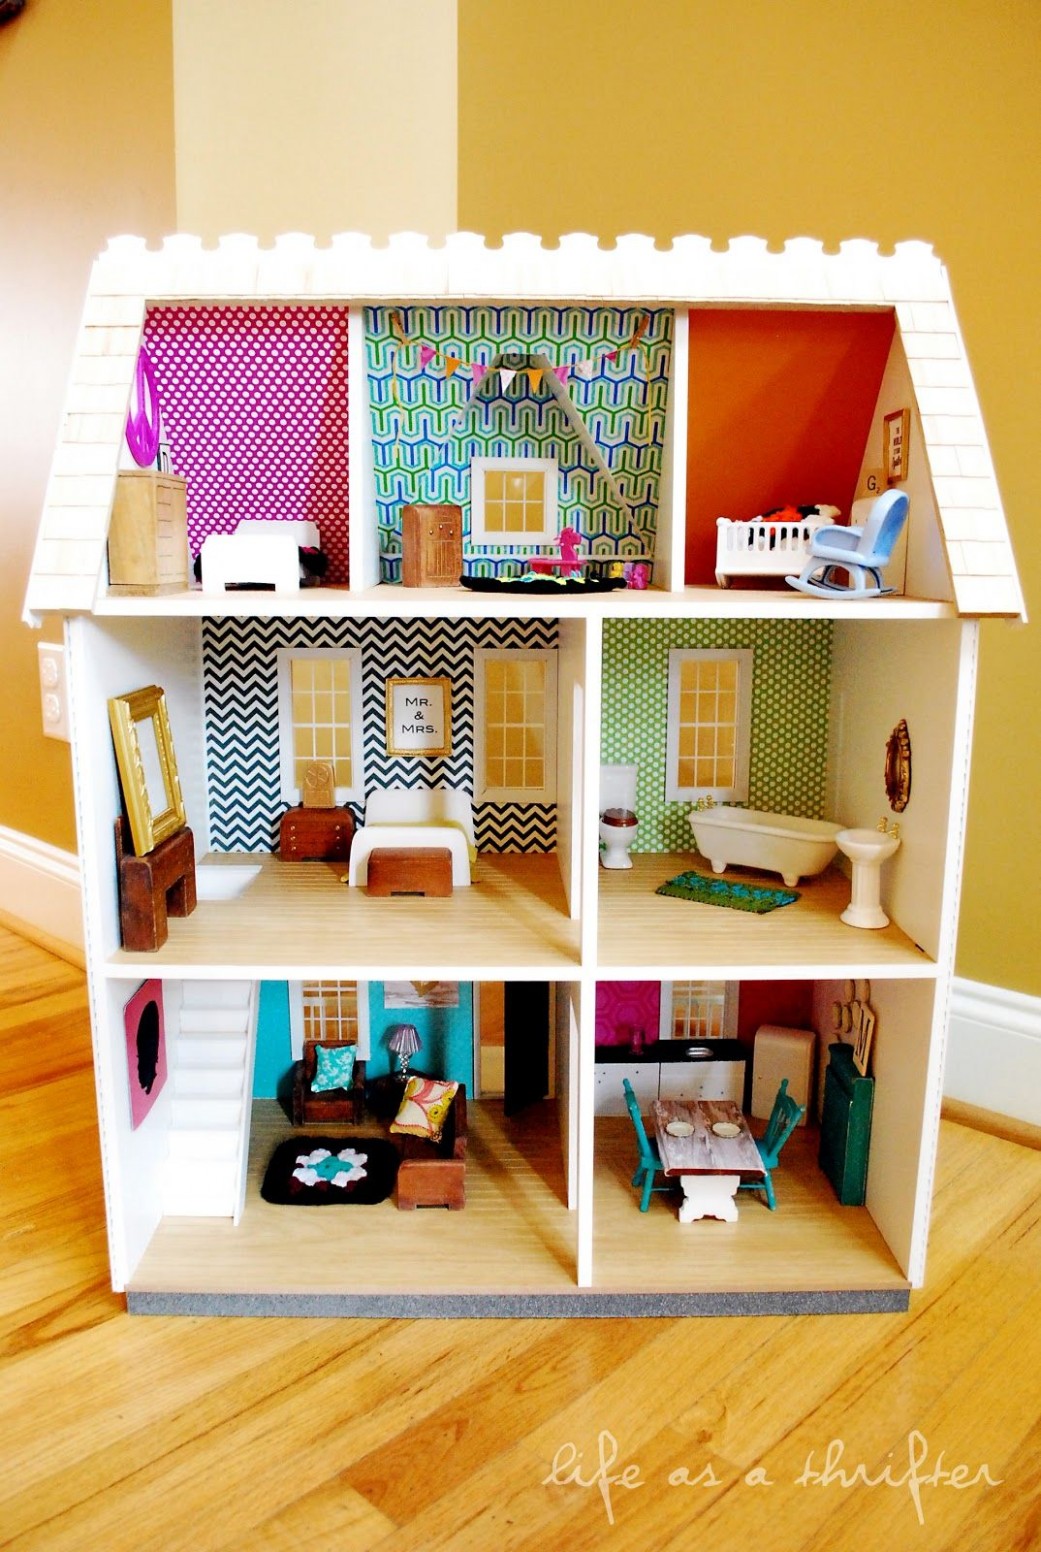 Life As A Thrifter: The Dollhouse Dollhouse From Hobby Lobby. I ..